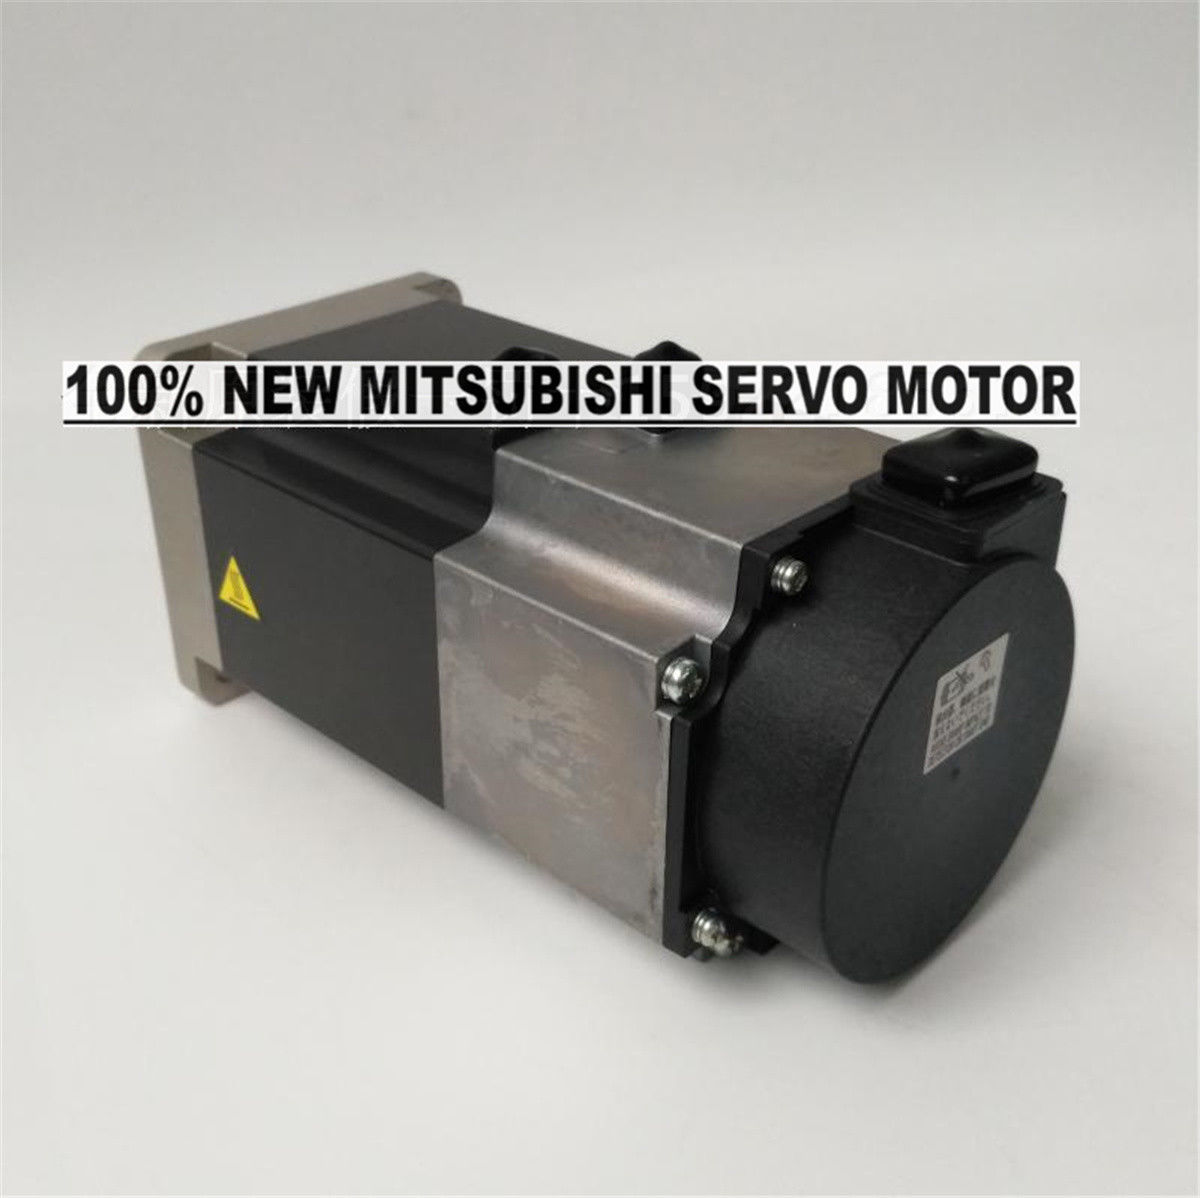 NEW Mitsubishi Servo Motor HF-KN73BJ-S100 in box HFKN73BJS100 - Click Image to Close